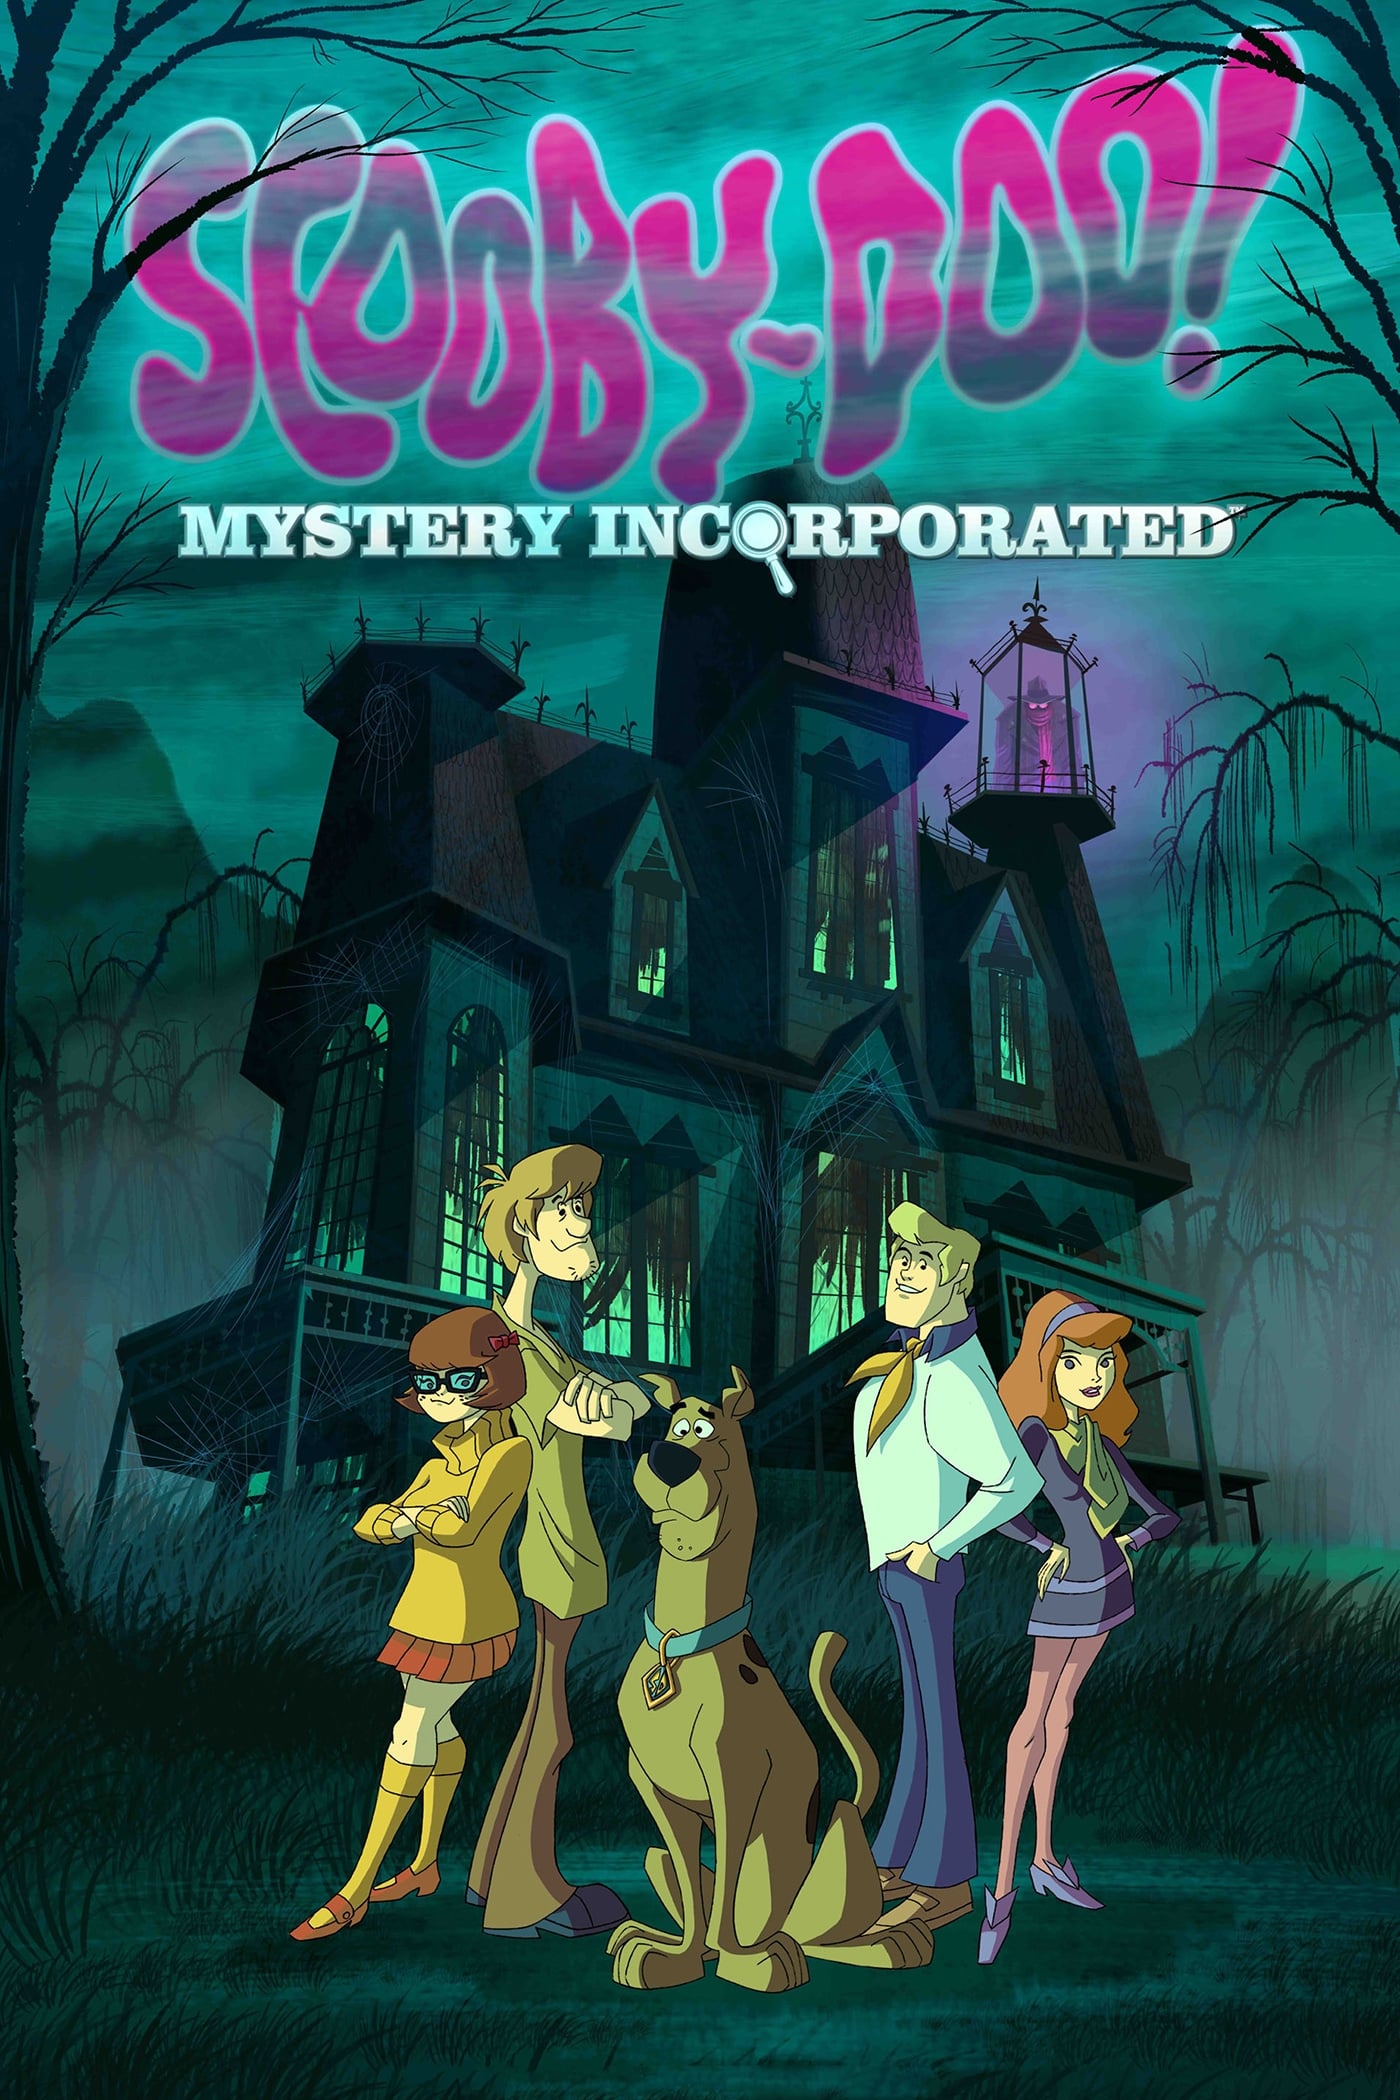 Scooby-Doo - Mystères associés (2010)